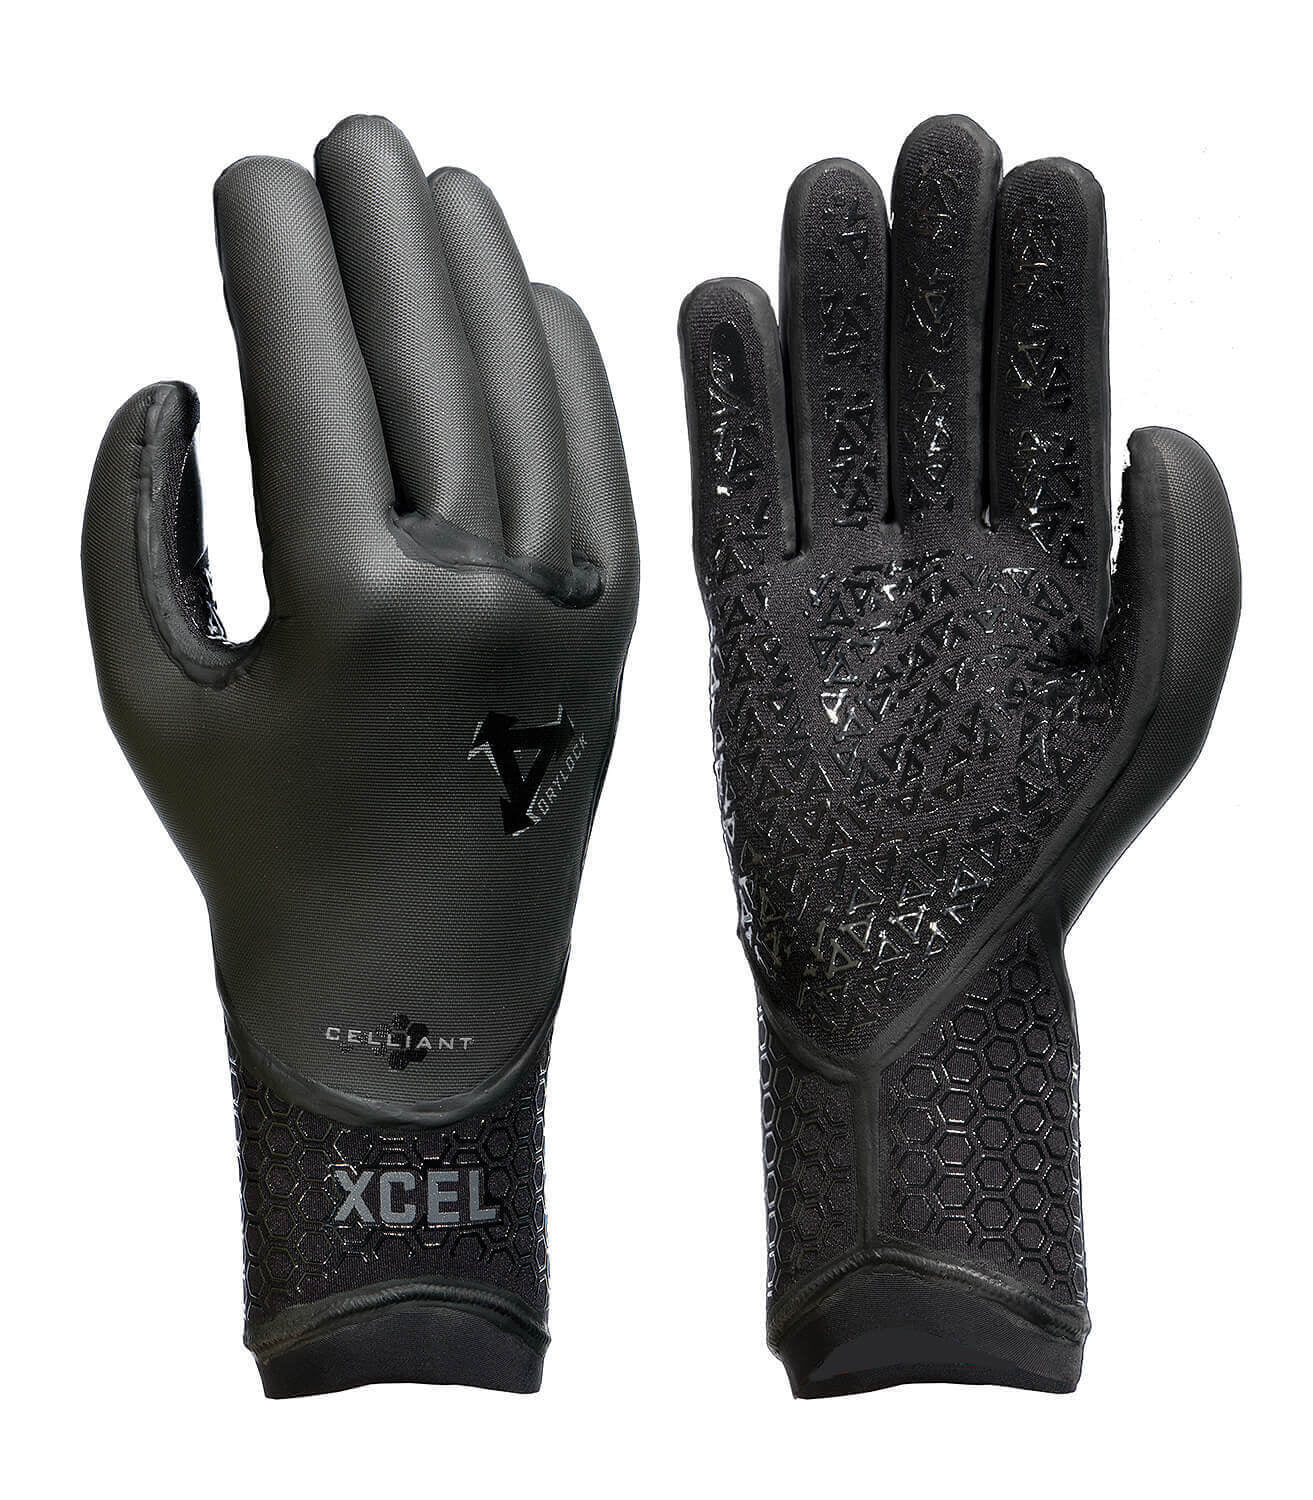 5mm XCEL DRYLOCK 5-Finger Wetsuit Gloves